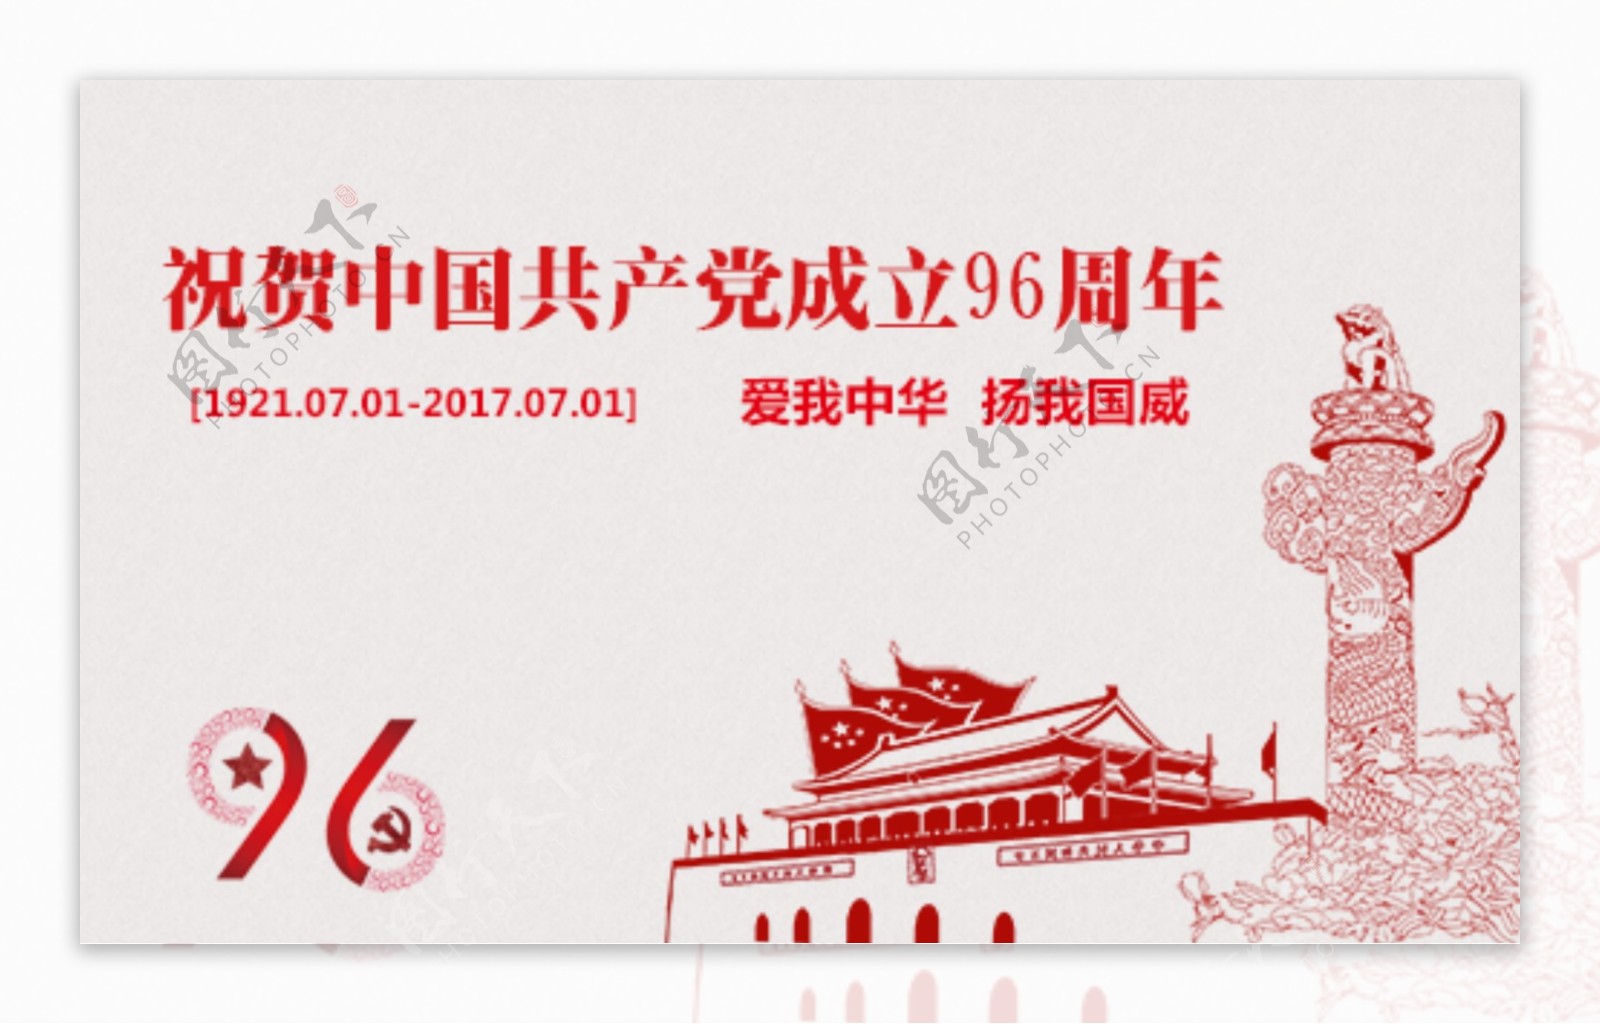 祝贺中国成立96周年